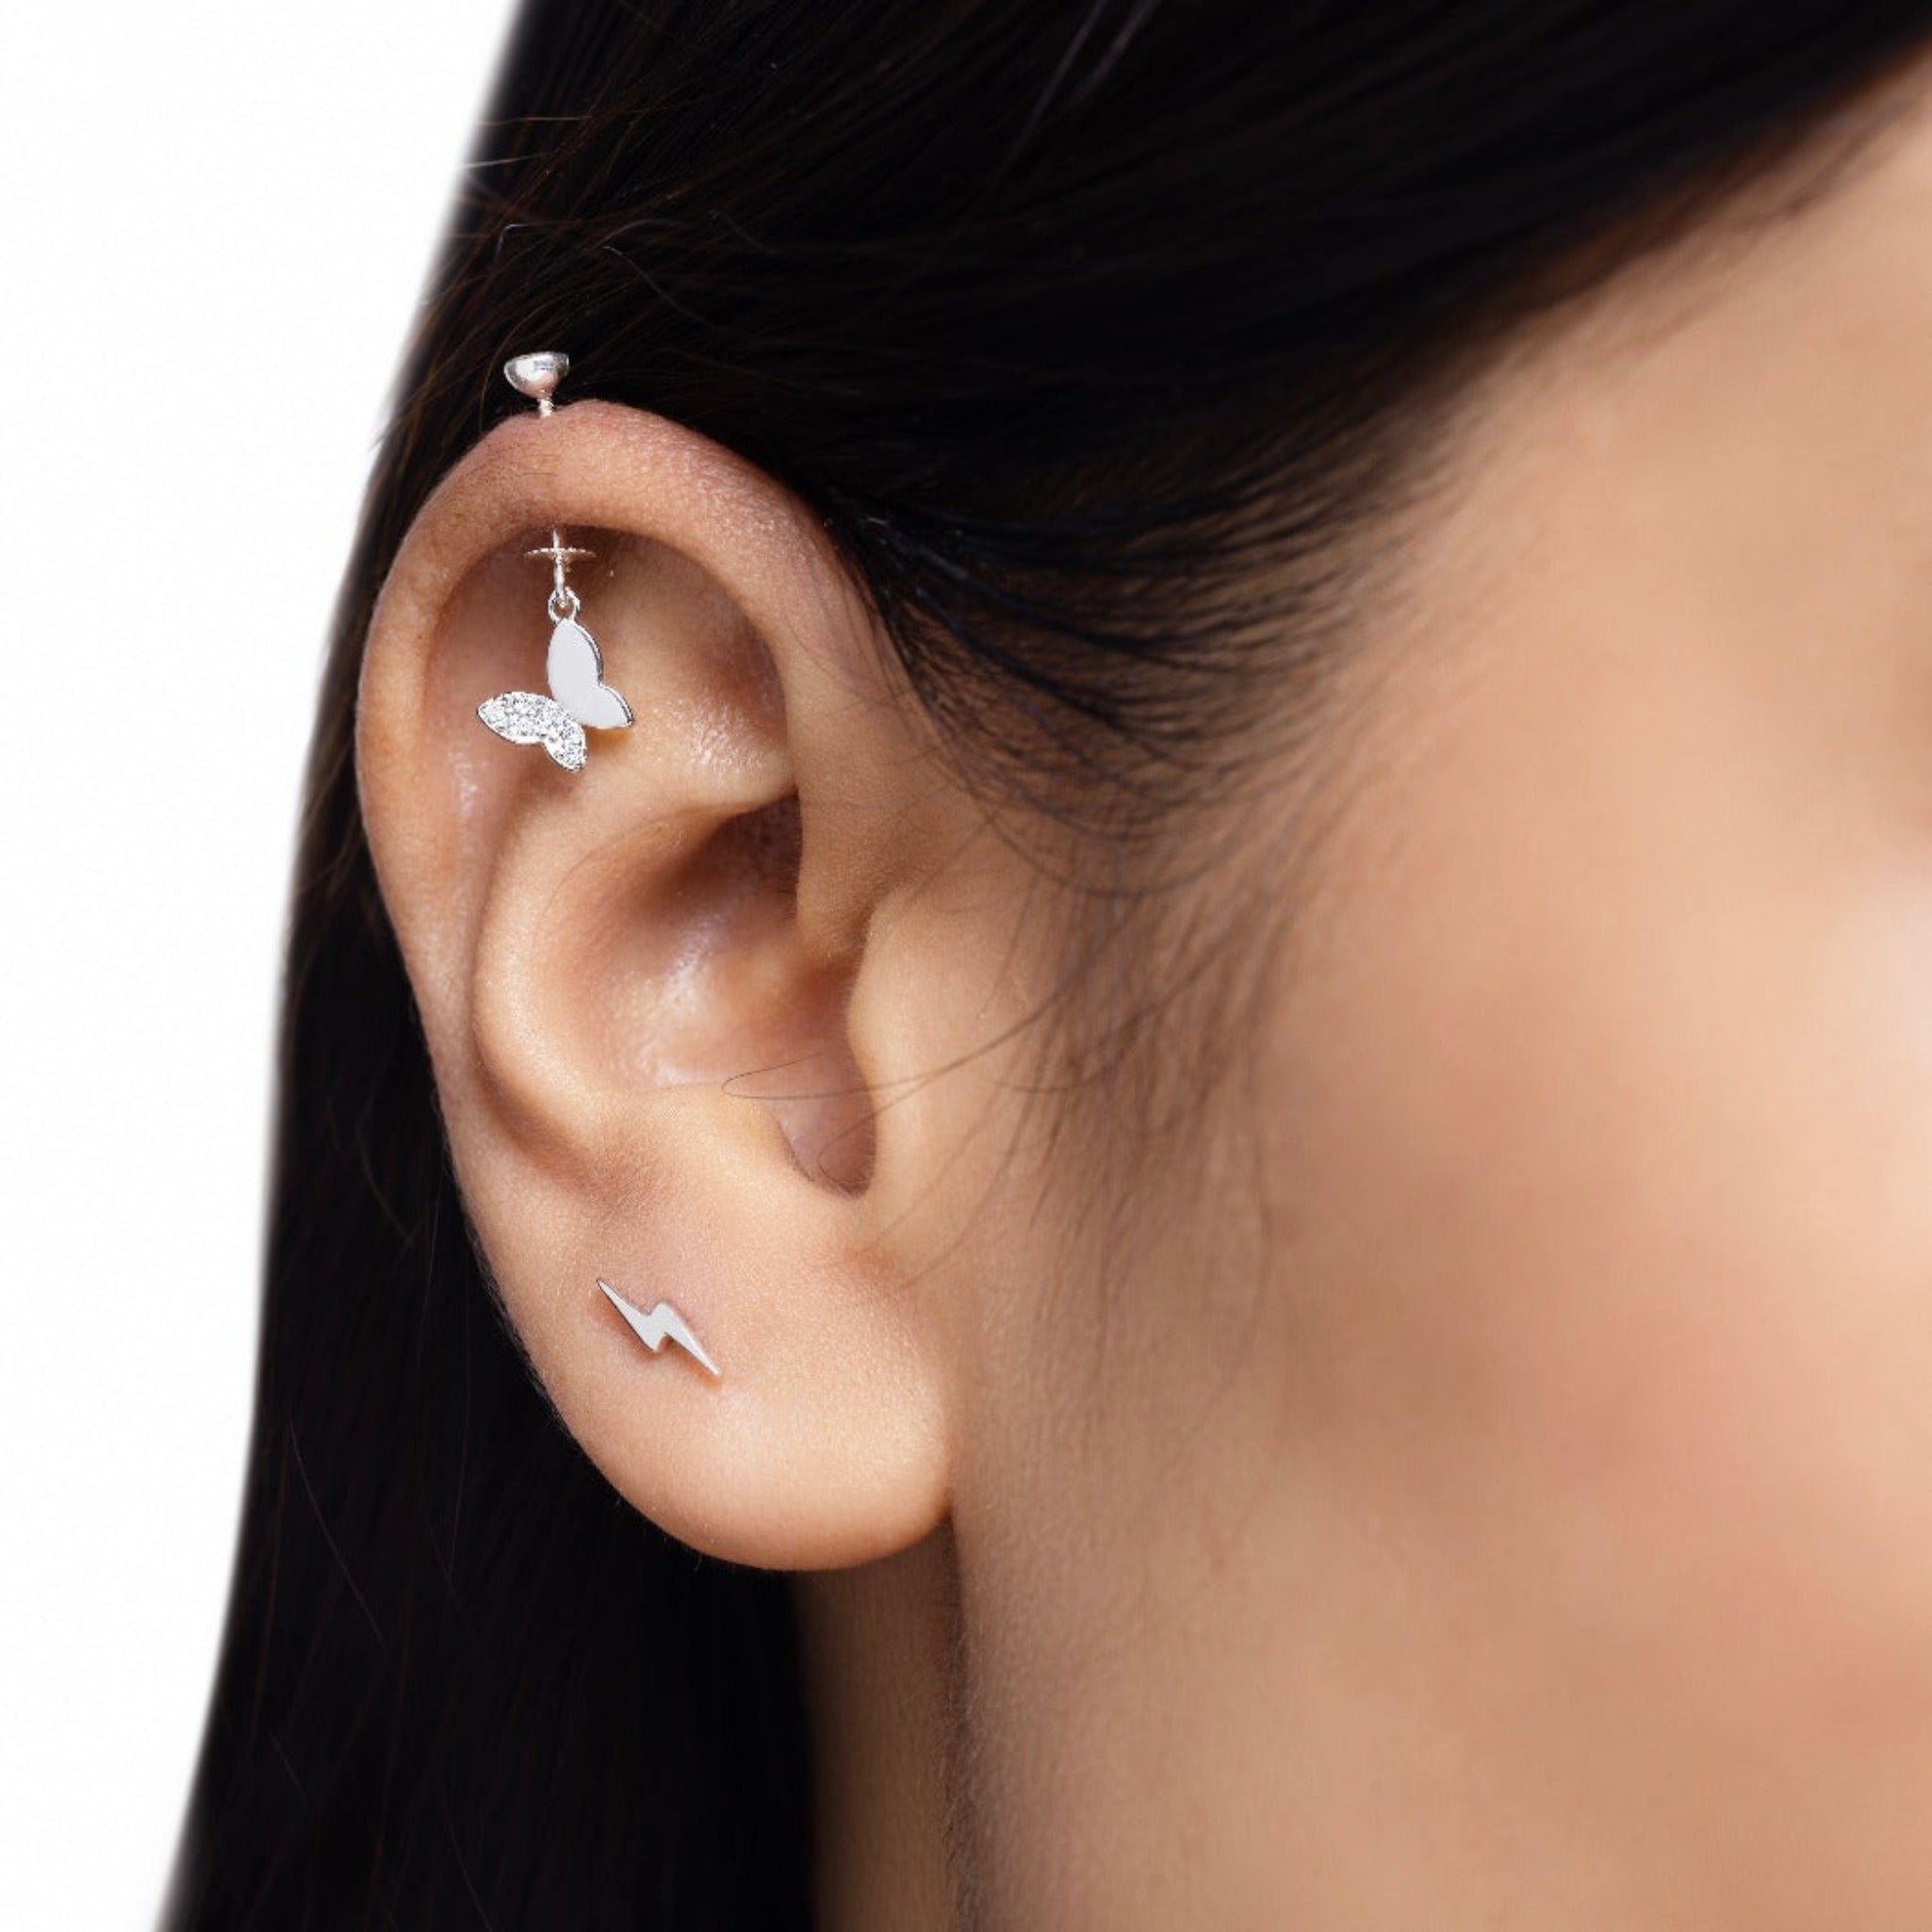 Buy Ethnic 18kt Gold Earrings Upper Ear Earrings Barbells Piercing Jewellry  India Piercing Online in India - Etsy